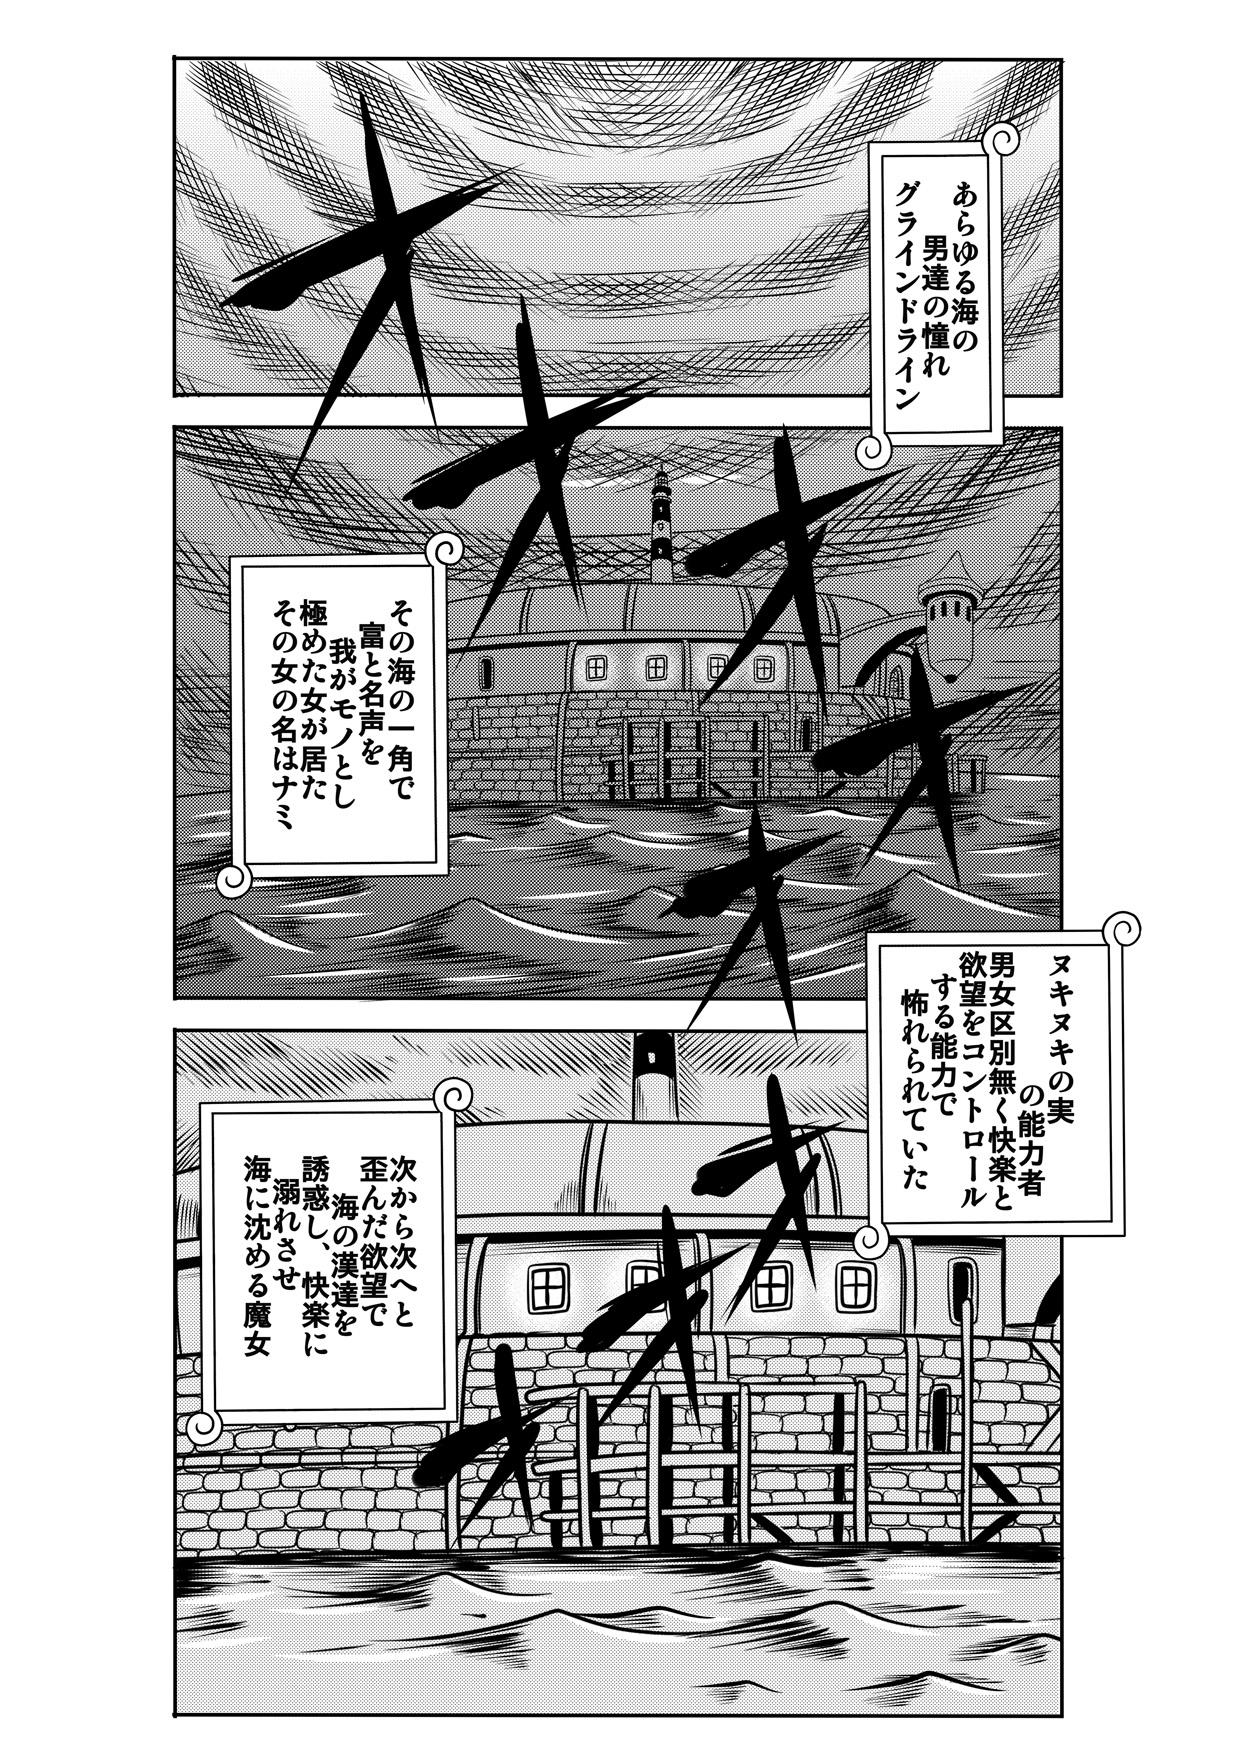 Corrida "Nukinuki no Mi" no Nouryokusha 3 - Shinshou Seishounen Juujigun - One piece Highheels - Page 1